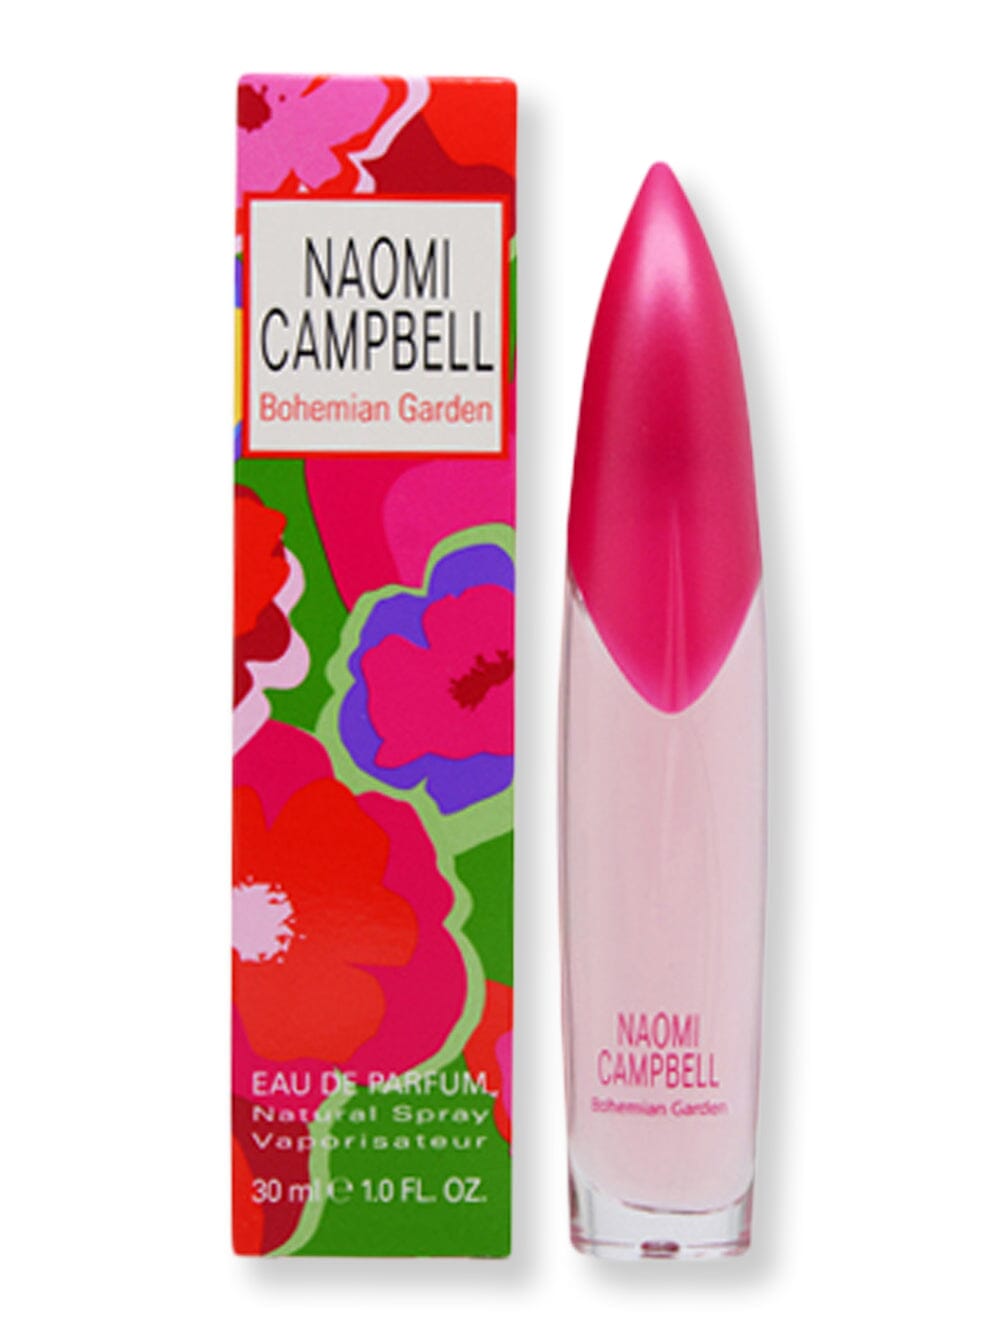 Naomi Campbell Naomi Campbell Bohemian Garden EDP Spray 1 oz30 ml Perfume 